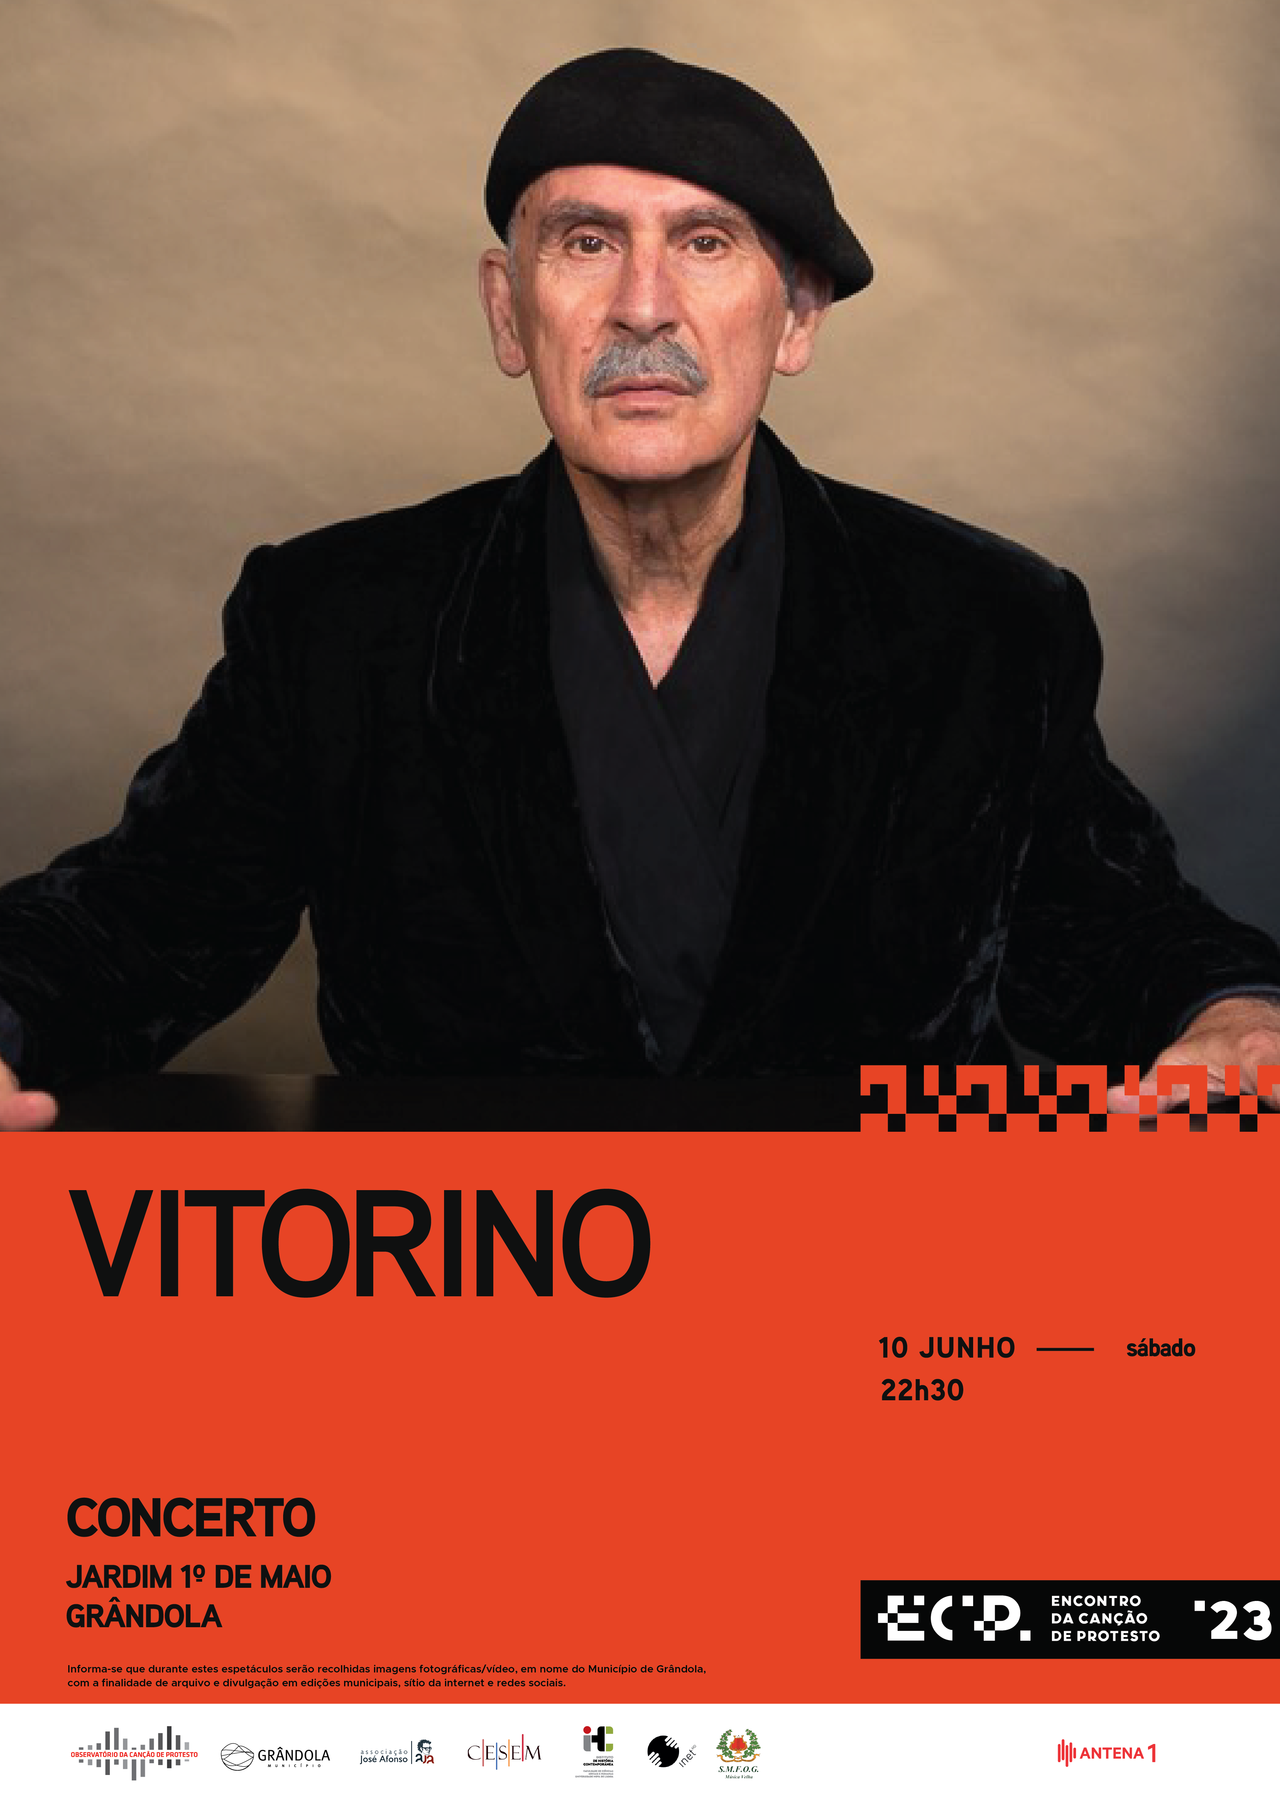 Encontro da Canção de Protesto | Concerto » Vitorino